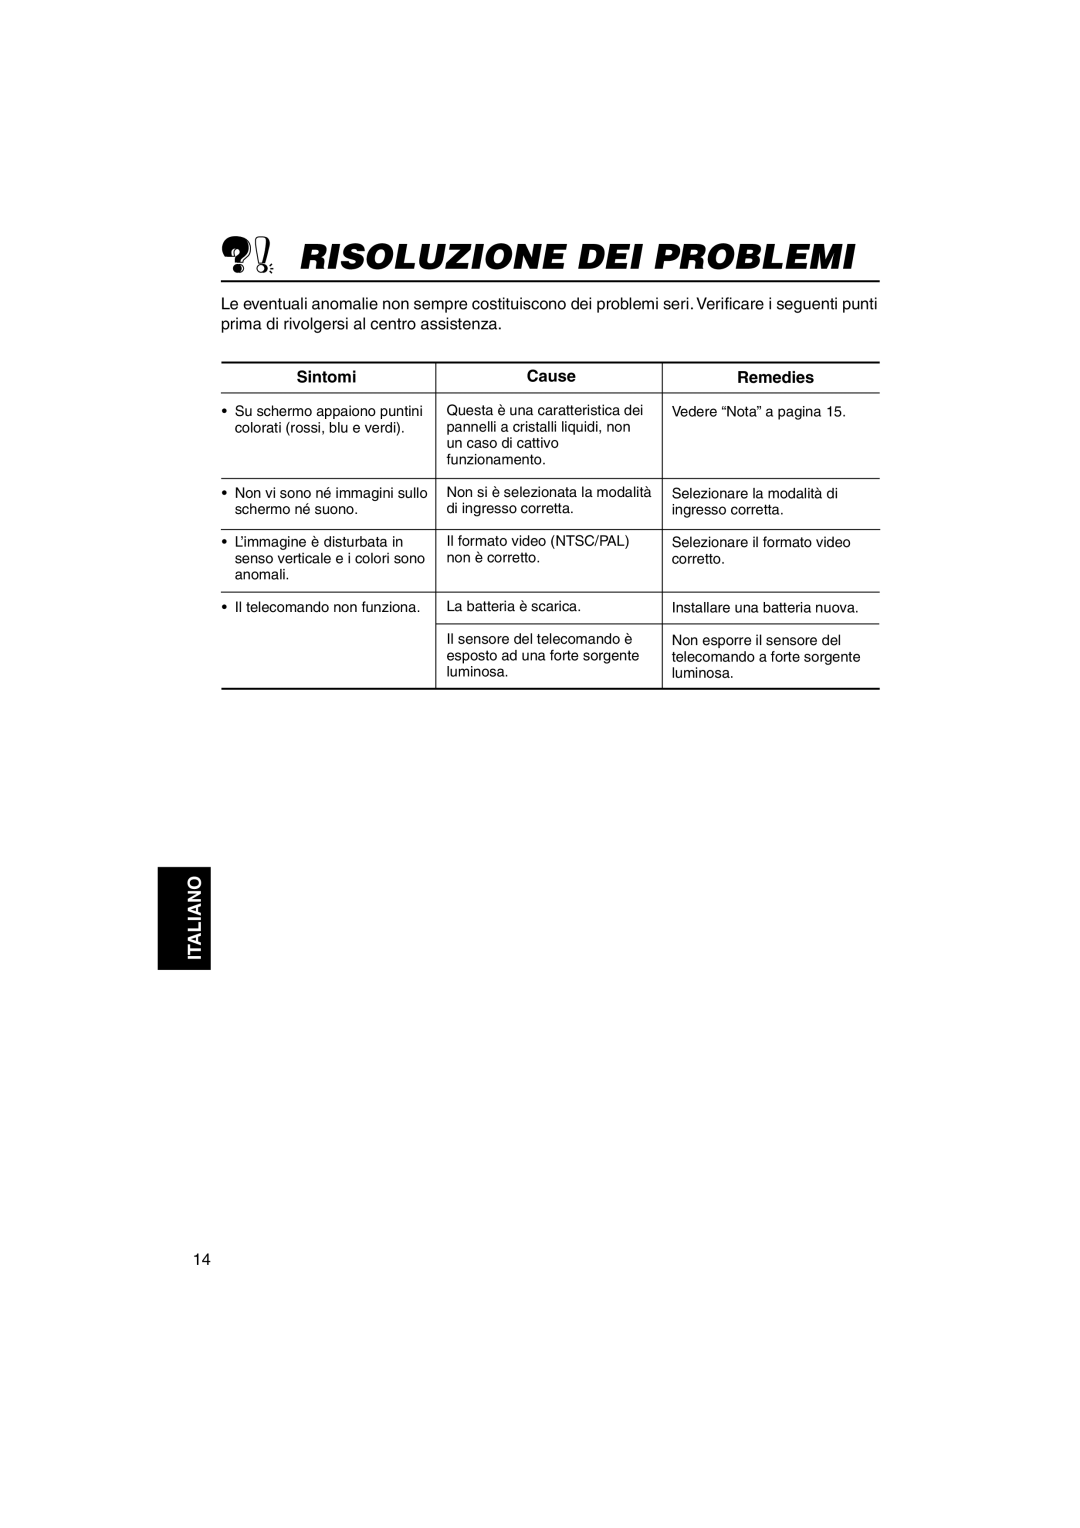 JVC KV-MH6500 manual Risoluzione Dei Problemi, Sintomi, Cause, Remedies, Italiano 